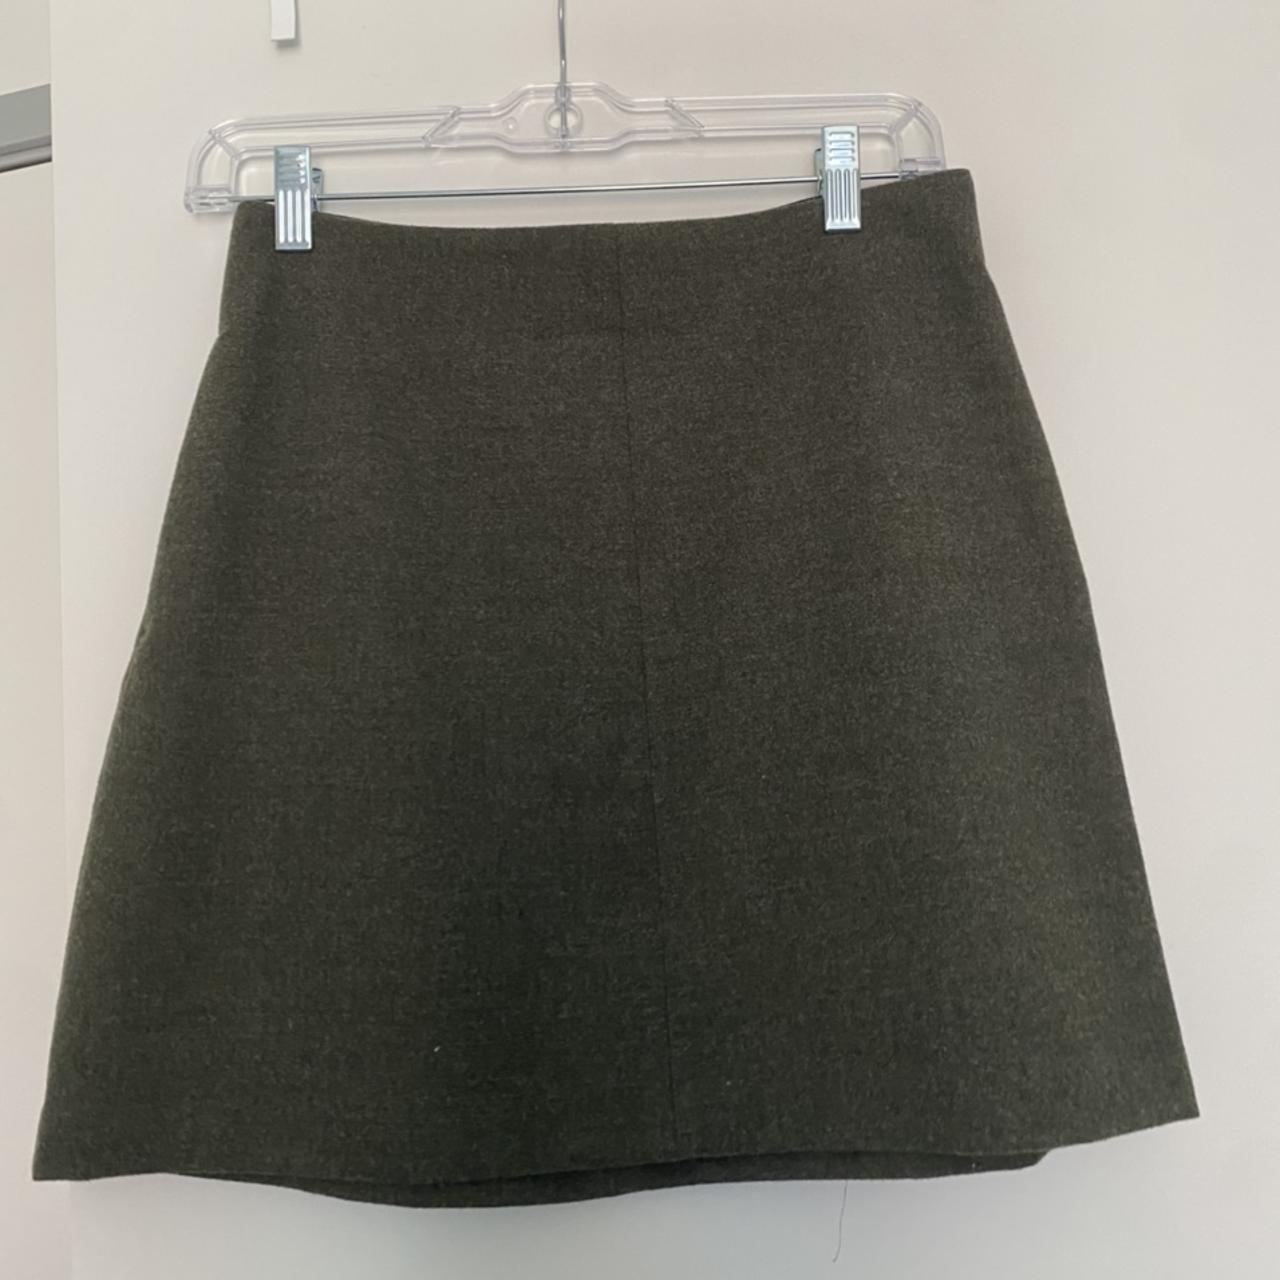 Green/grey aritzia (wilfred) wool a-line skirt (has... - Depop